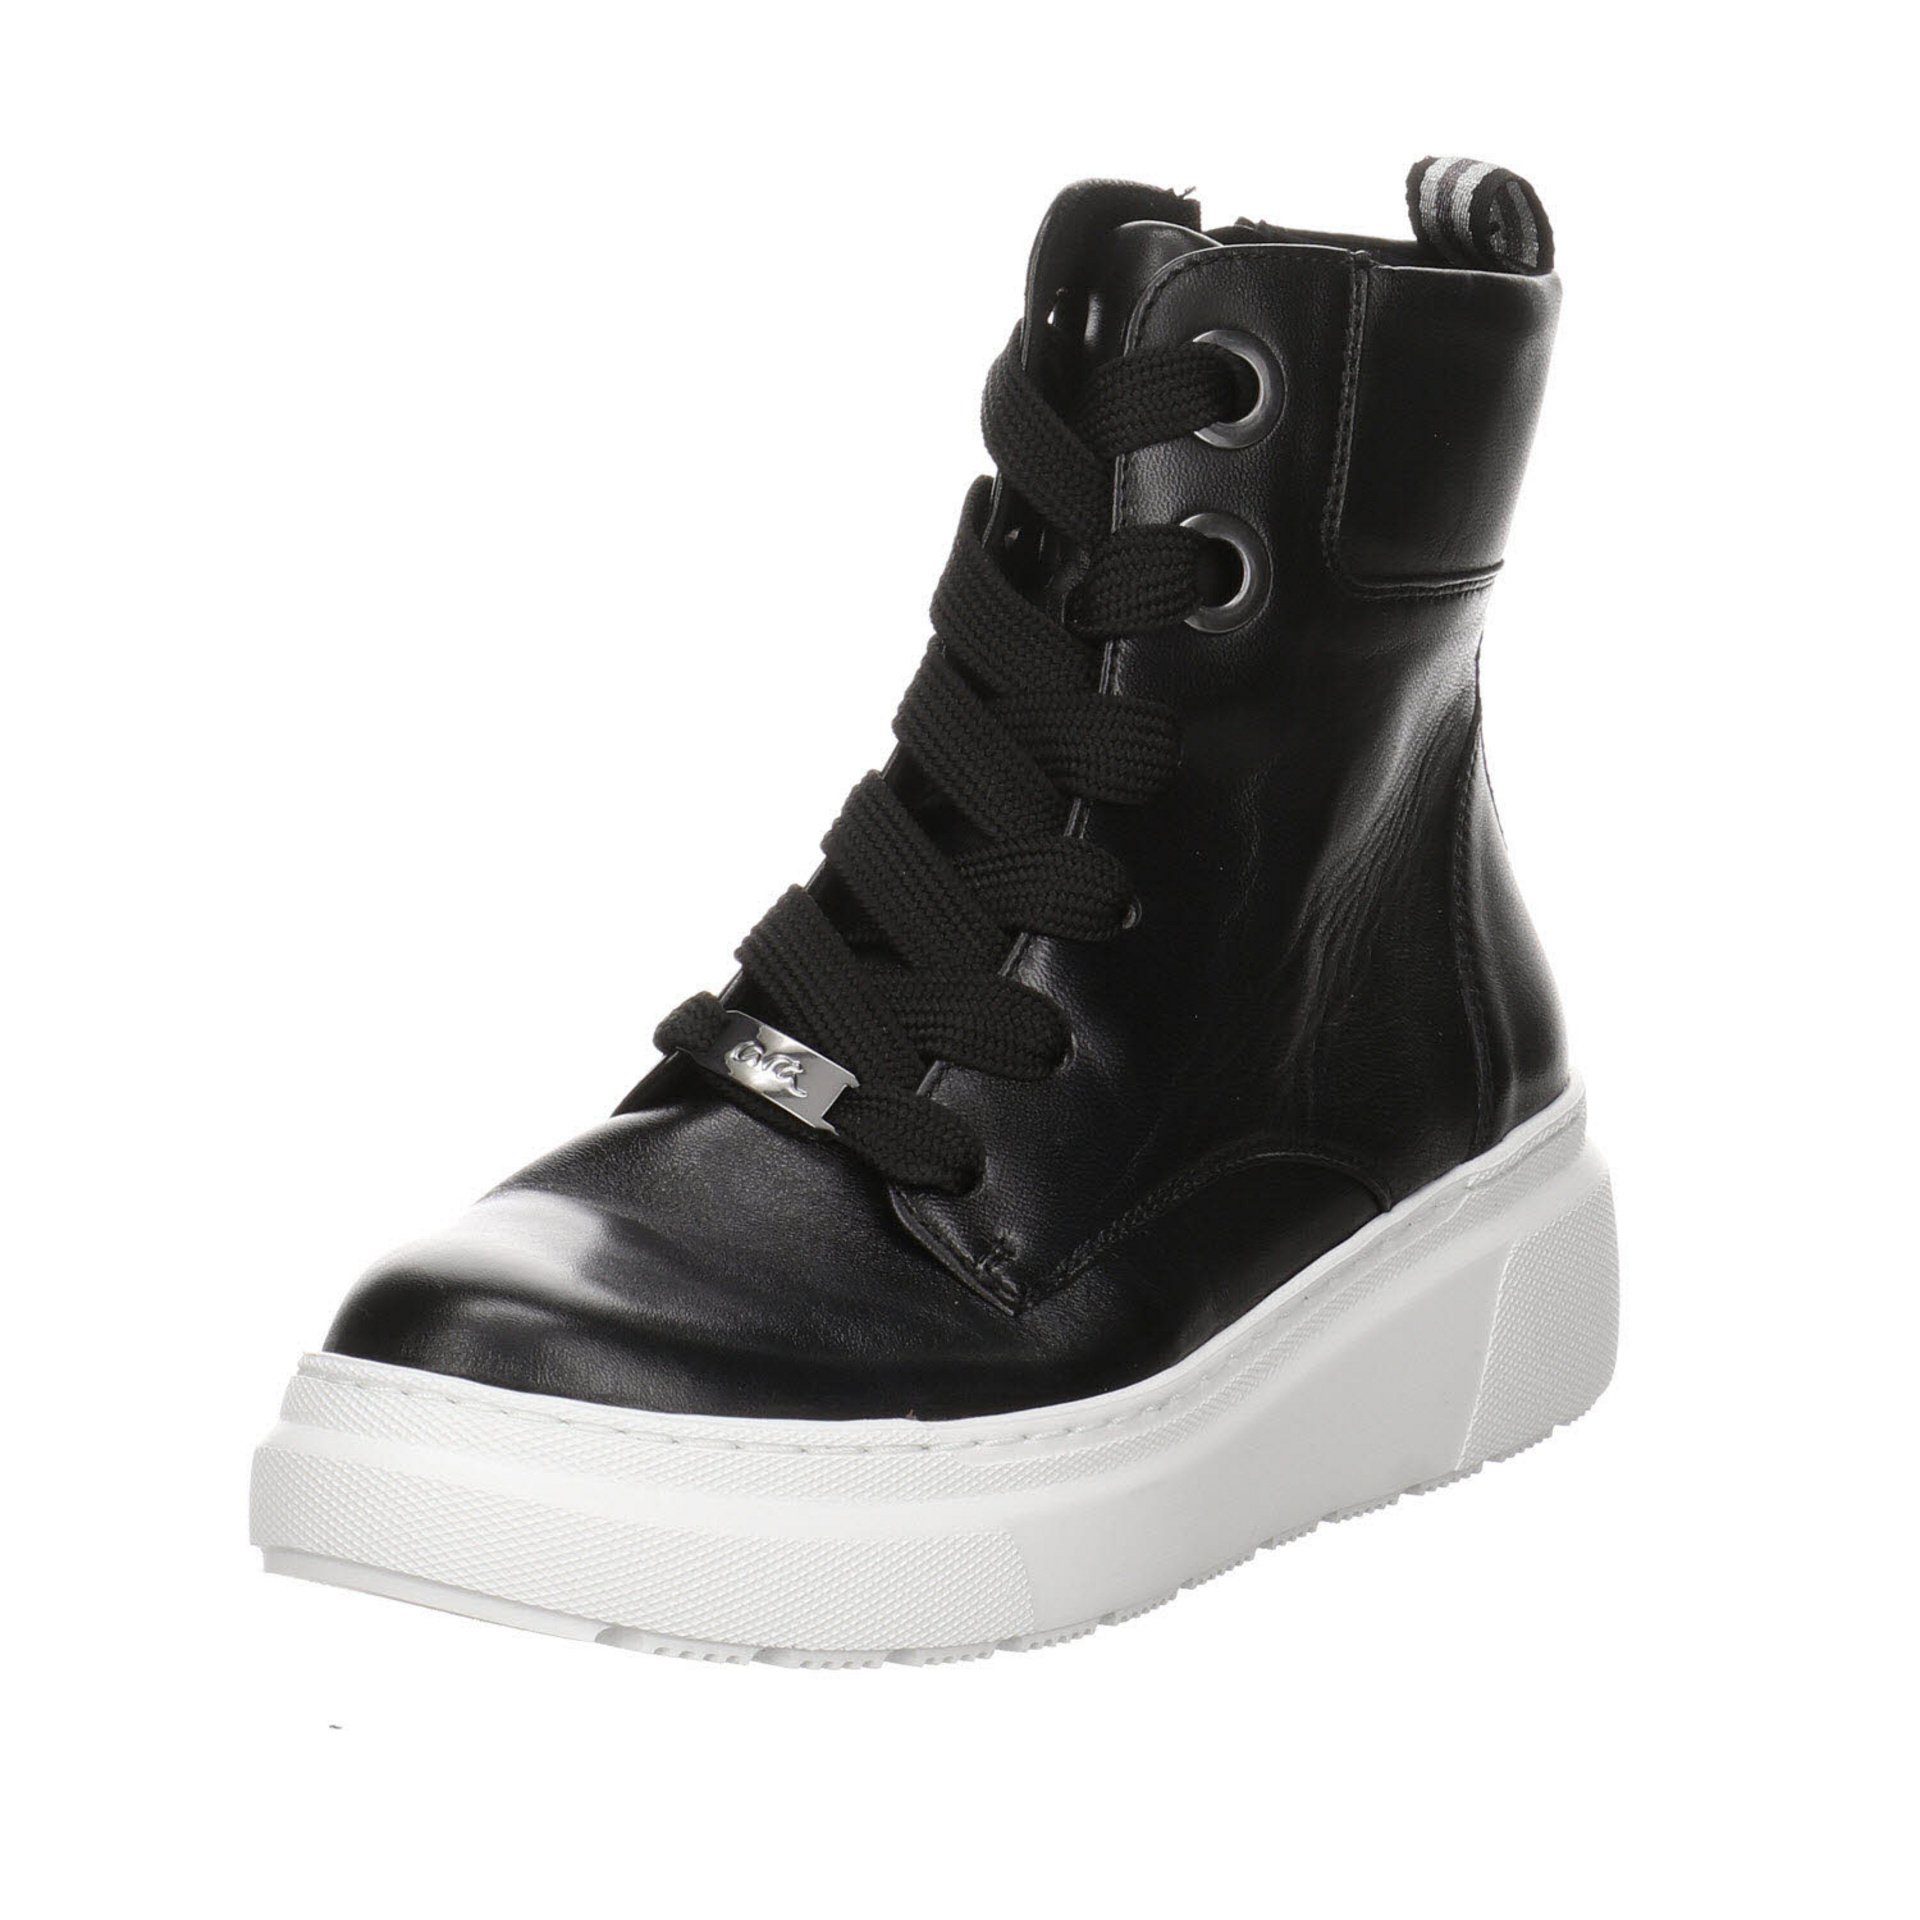 Ara Damen Stiefeletten Schuhe Lausanne-Highsoft Schnürstiefelette Textil schwarz dunkel